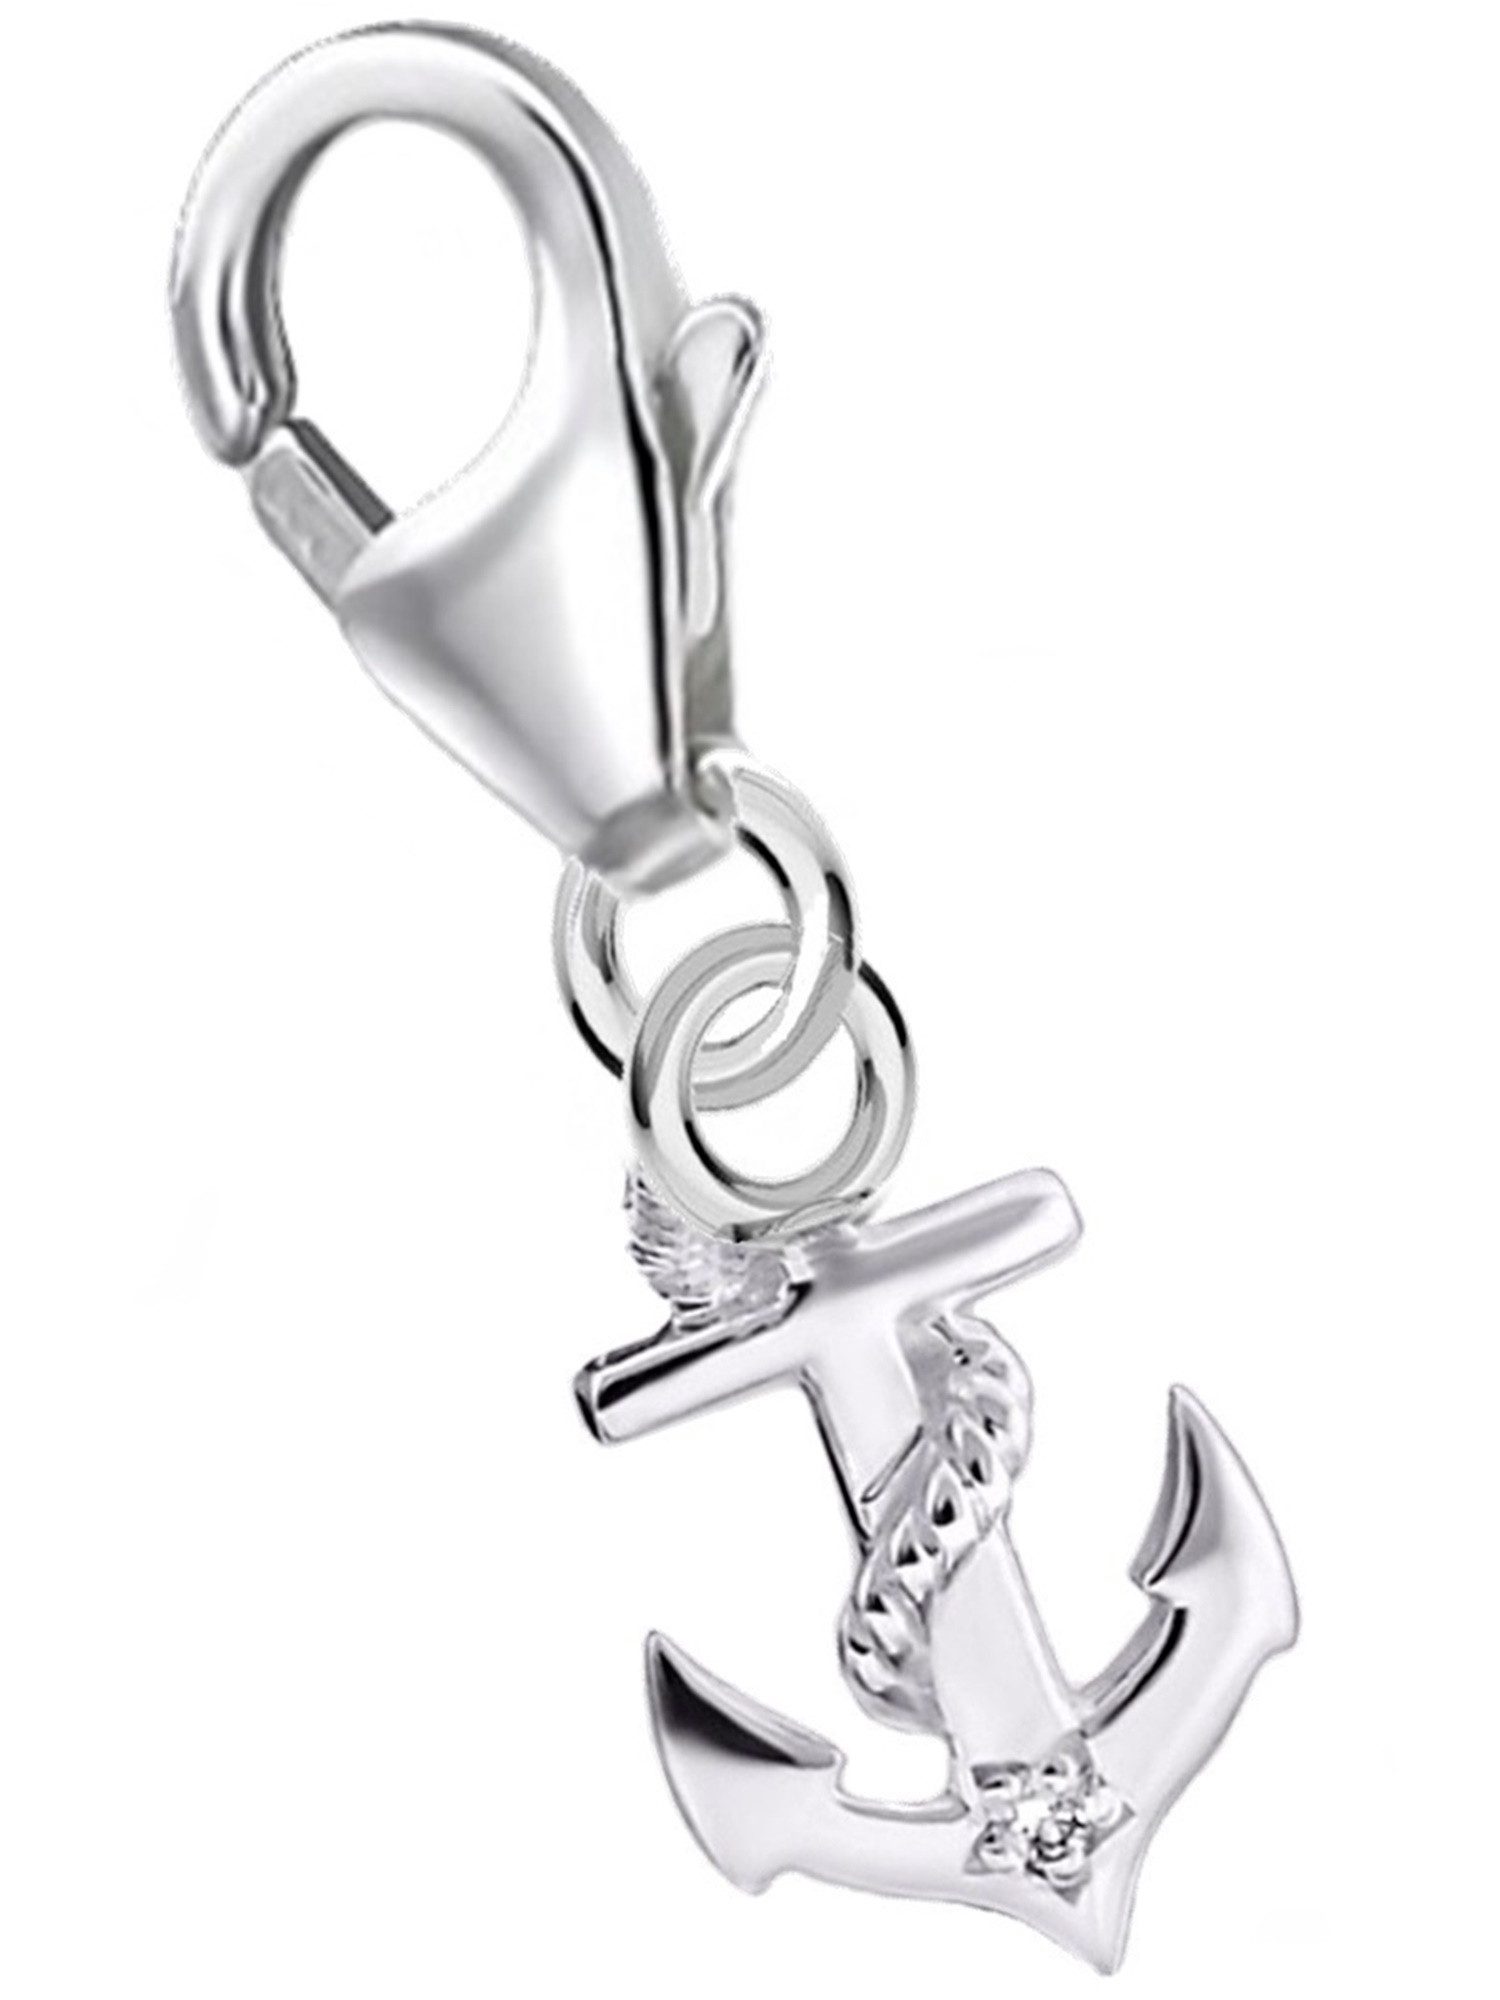 Goldene Hufeisen Charm Anker mini Anker Karabiner Charm Anhänger 925 Silber mit Zirkonia (1 Stück, inkl. Etui), für Gliederarmband oder Halskette